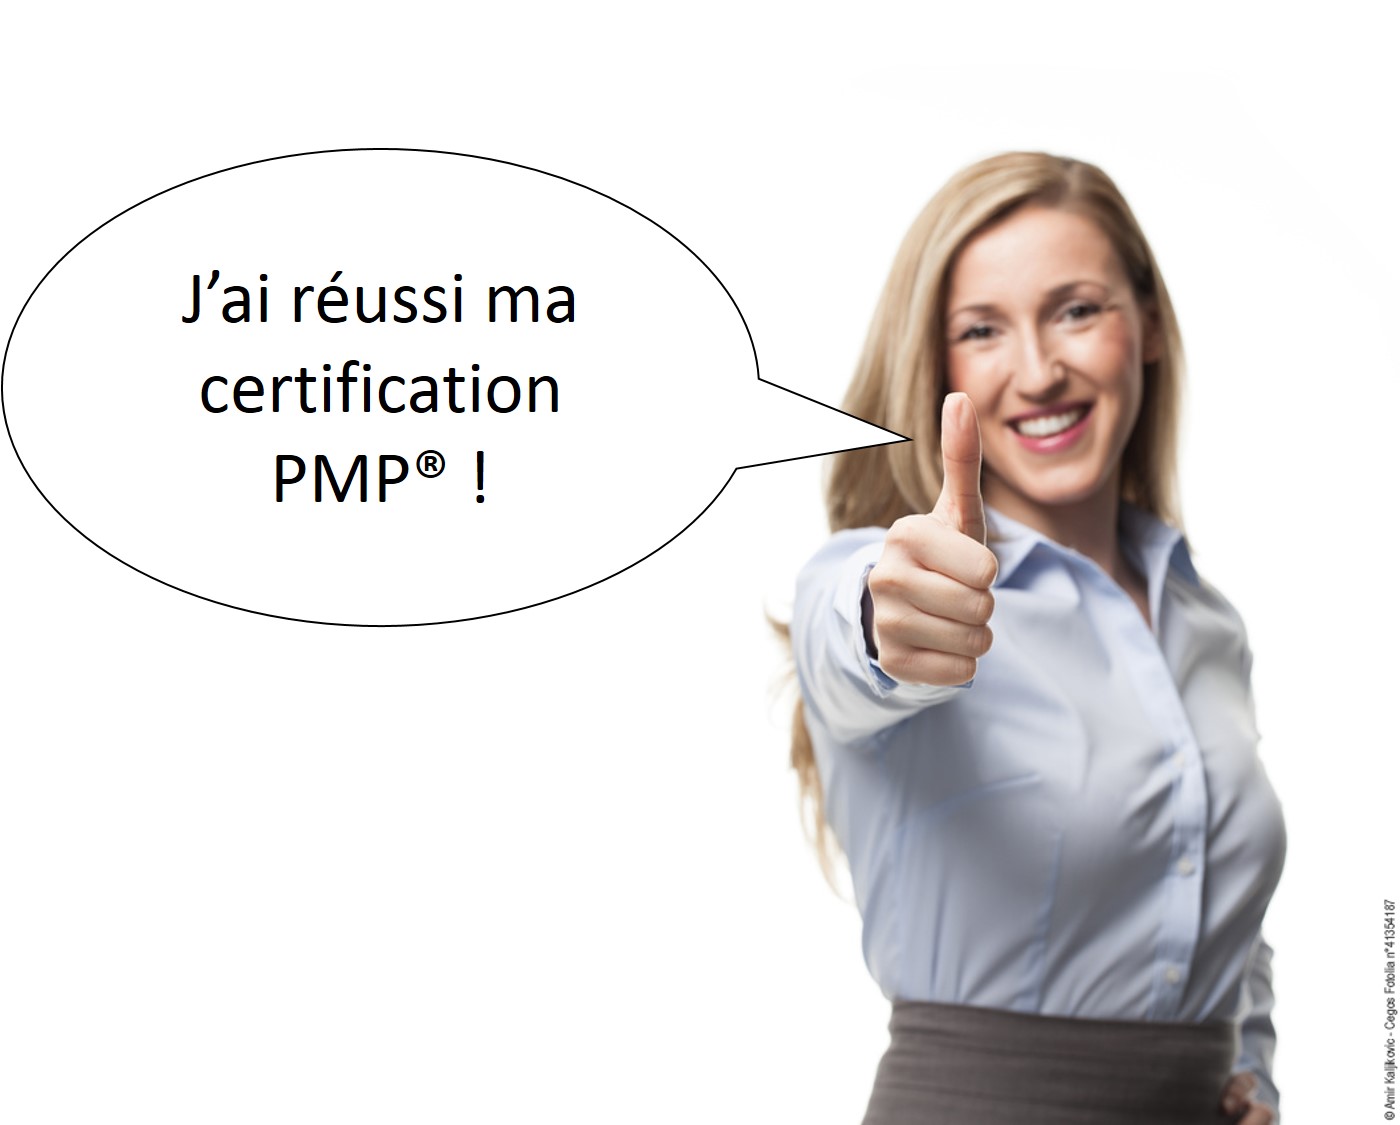  5 conseils pour réussir votre certification PMP® au premier passage